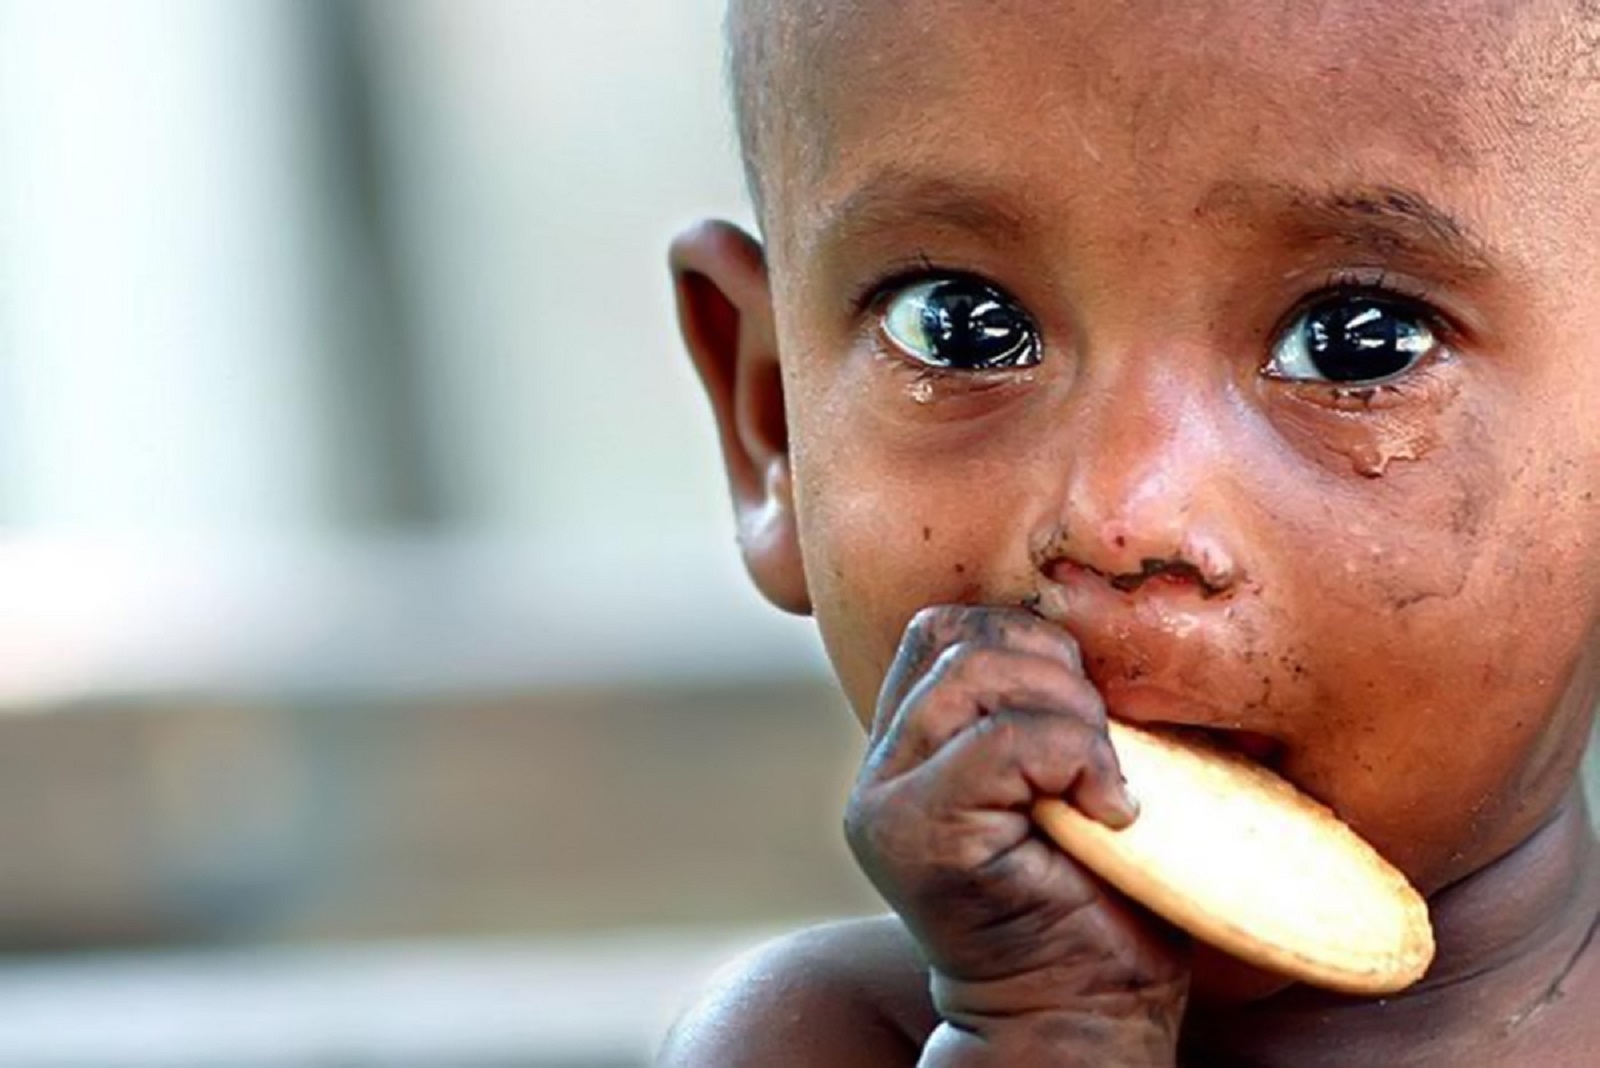 голодающие дети африки фото